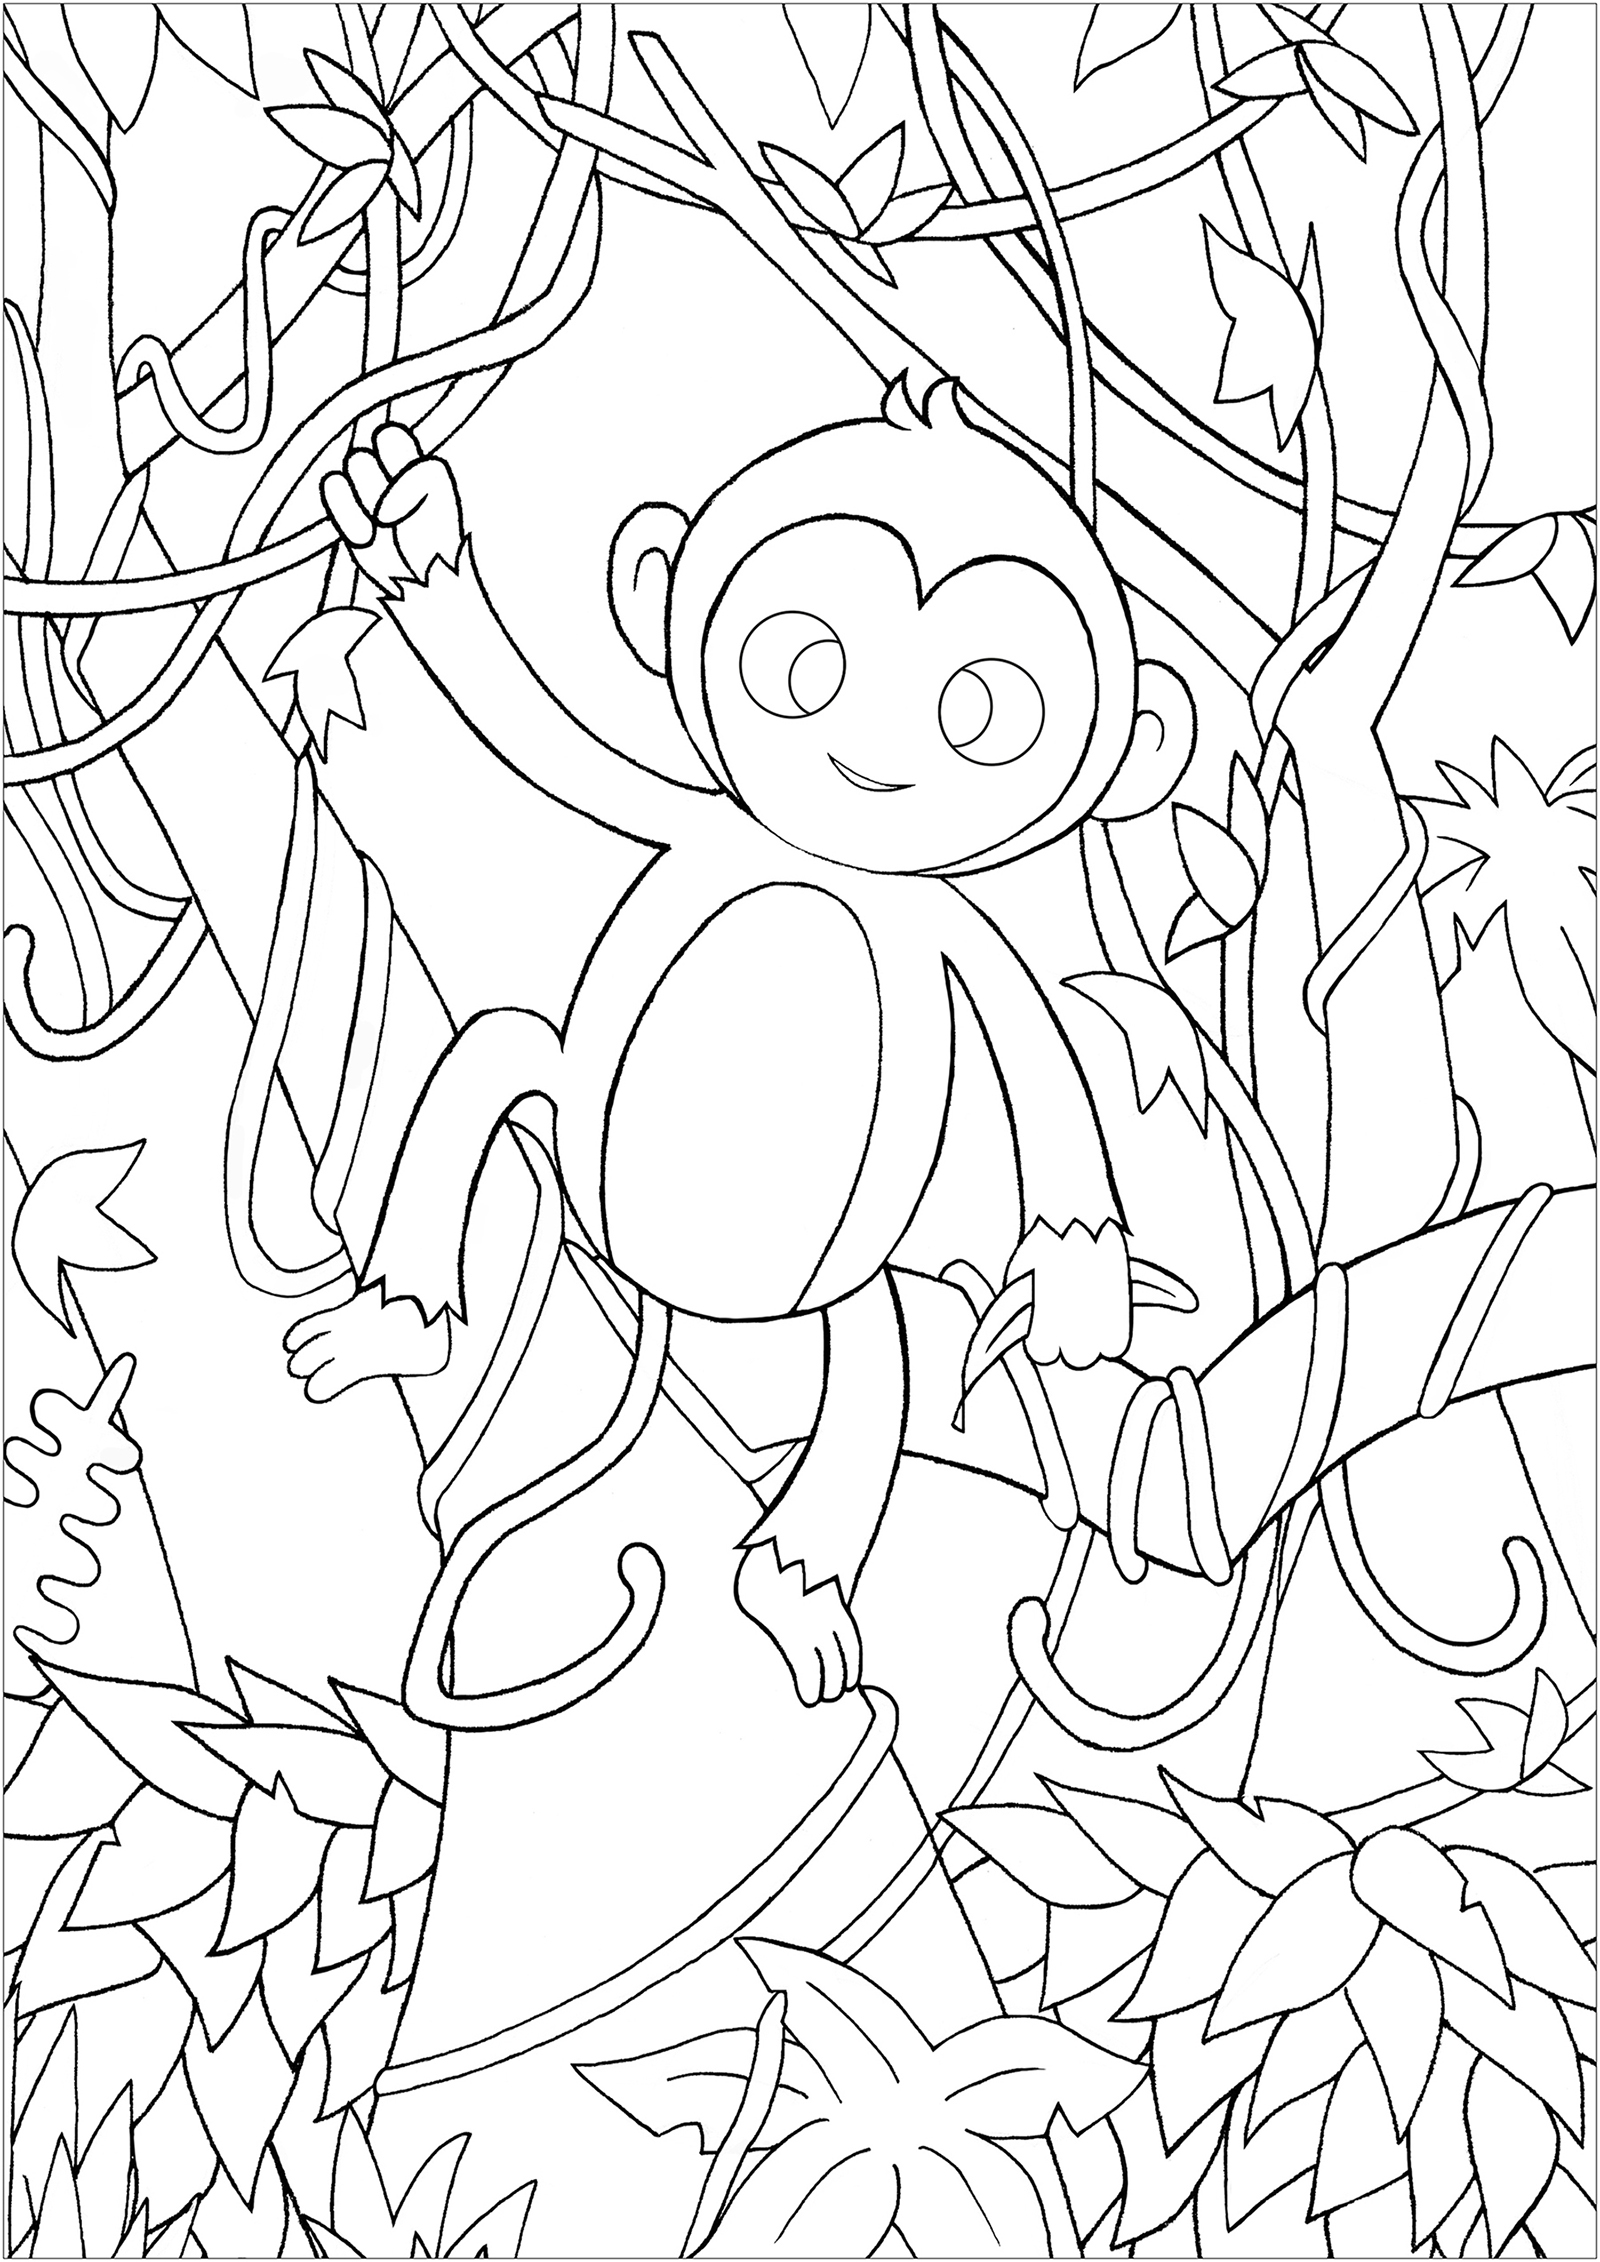 Colorir este belo macaco na floresta, caminhando de videira em videira